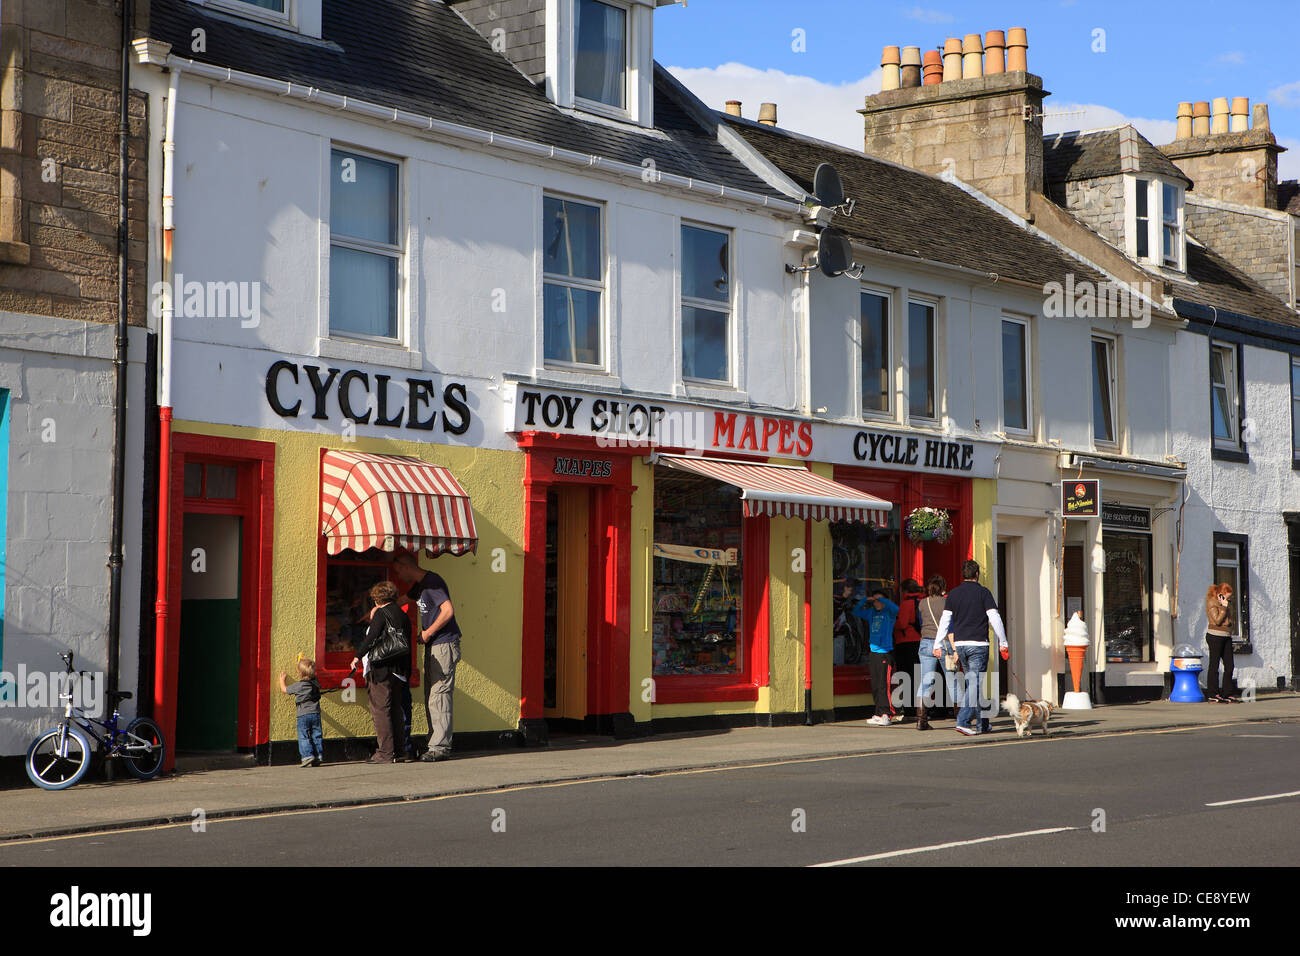 Location de vélo boutique dans Millport sur l'île de (Cumbrae) dans Ayrshire en Écosse Banque D'Images